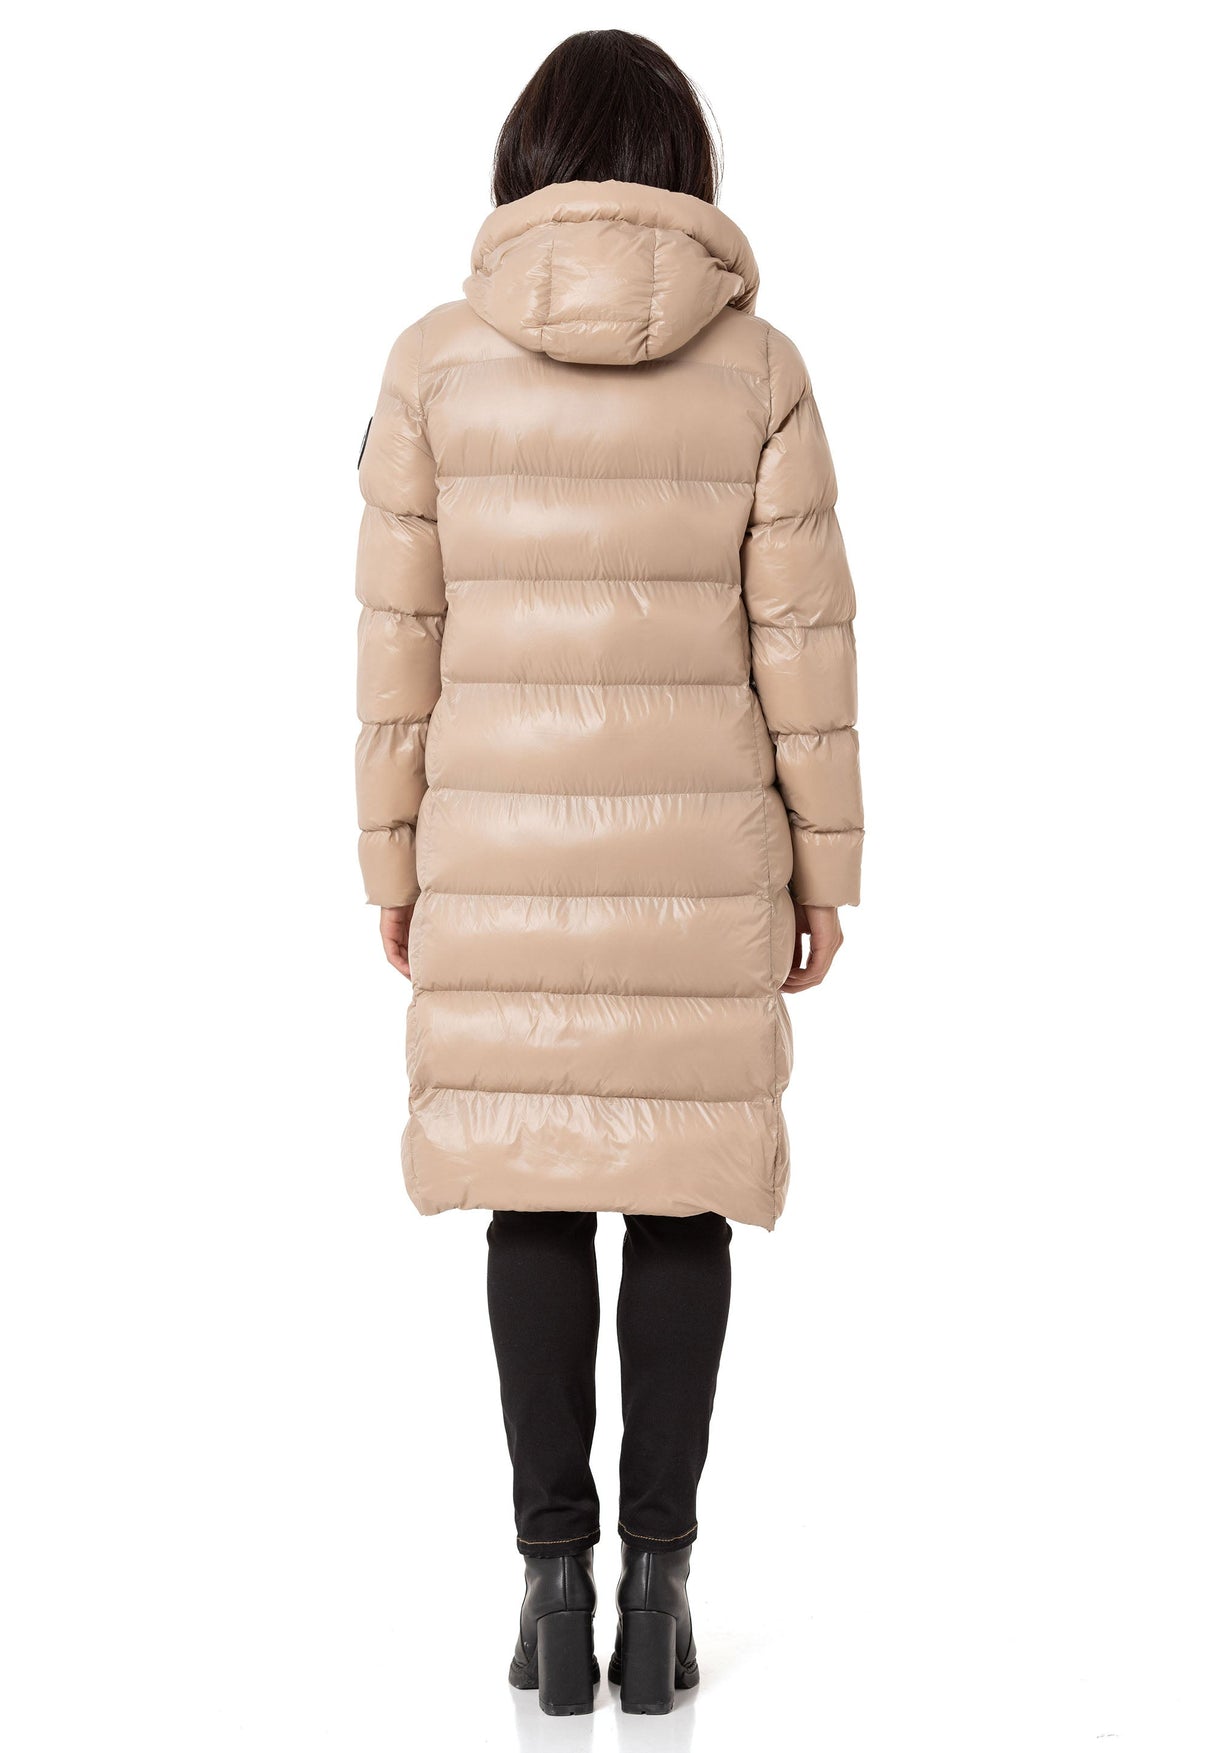 WM137 Women's Winter Jacket Quilting Coat in Elegant Design